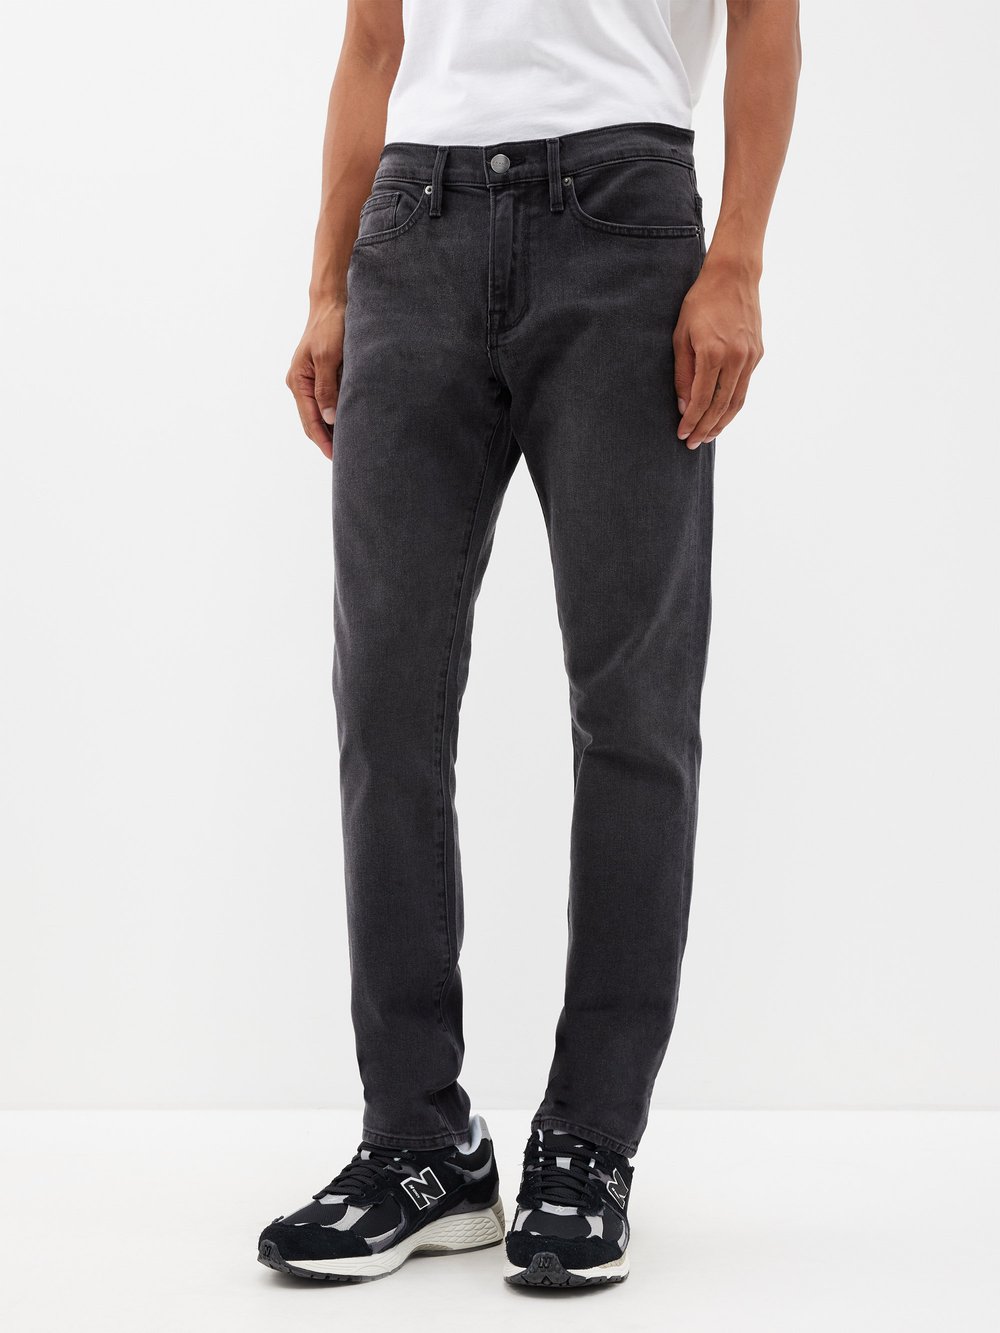 Джинсы l'homme узкого кроя FRAME, серый джинсы kiabi темно серые 42 размер